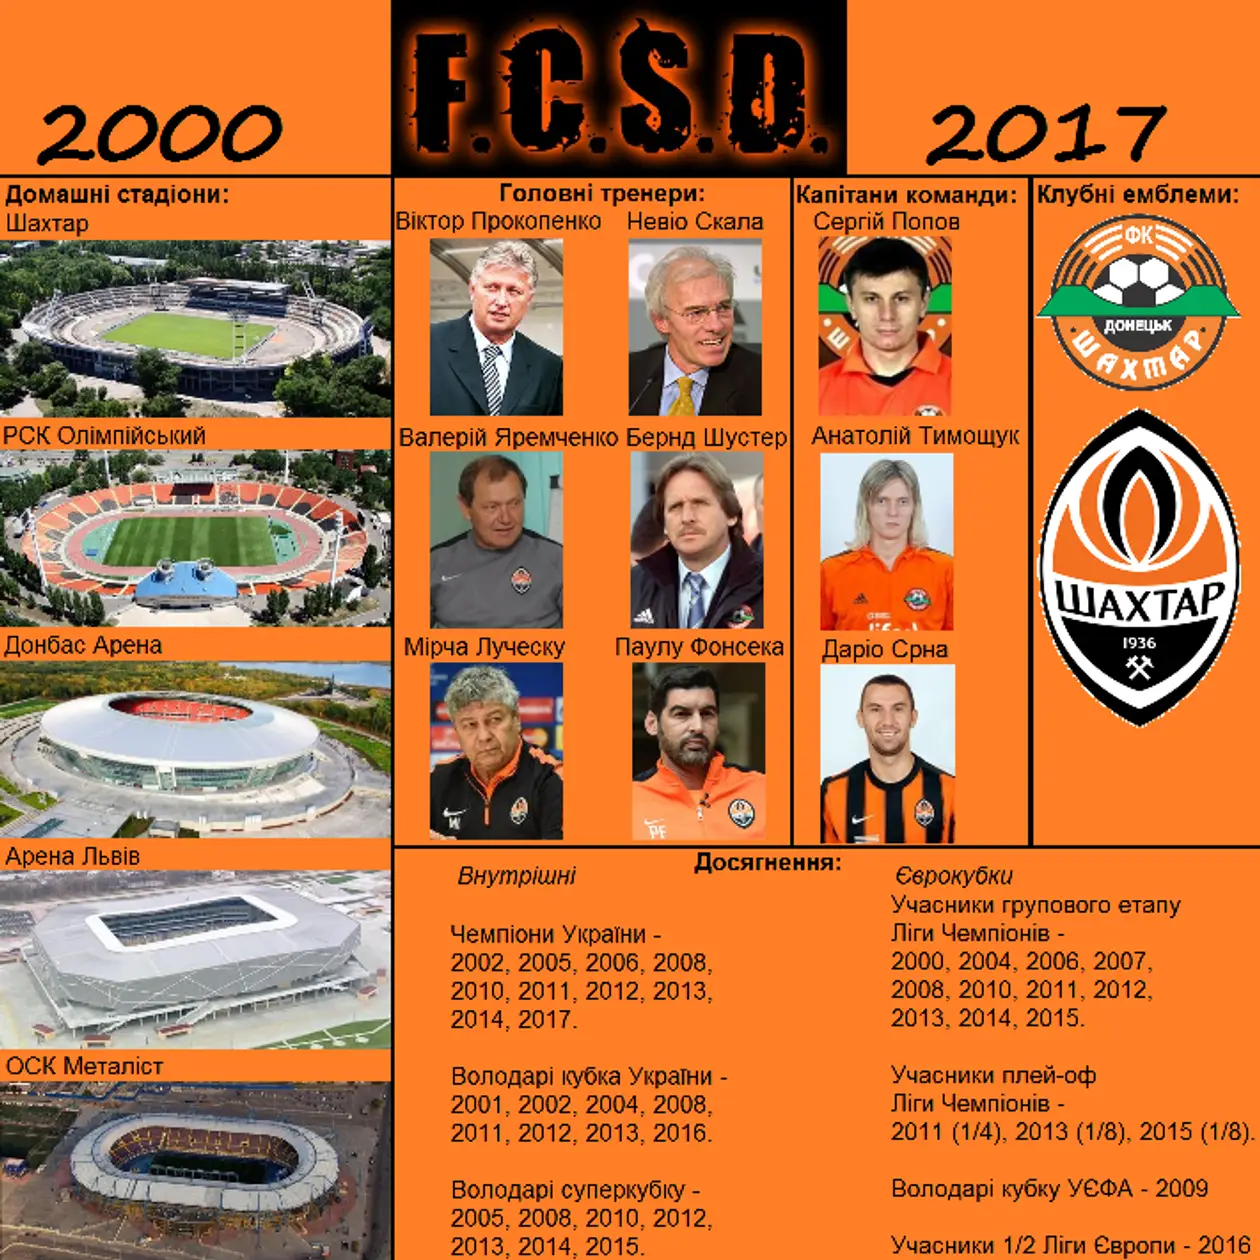 Шахтар Донецьк 2000 - 2017 (5 періодів клубної історії)